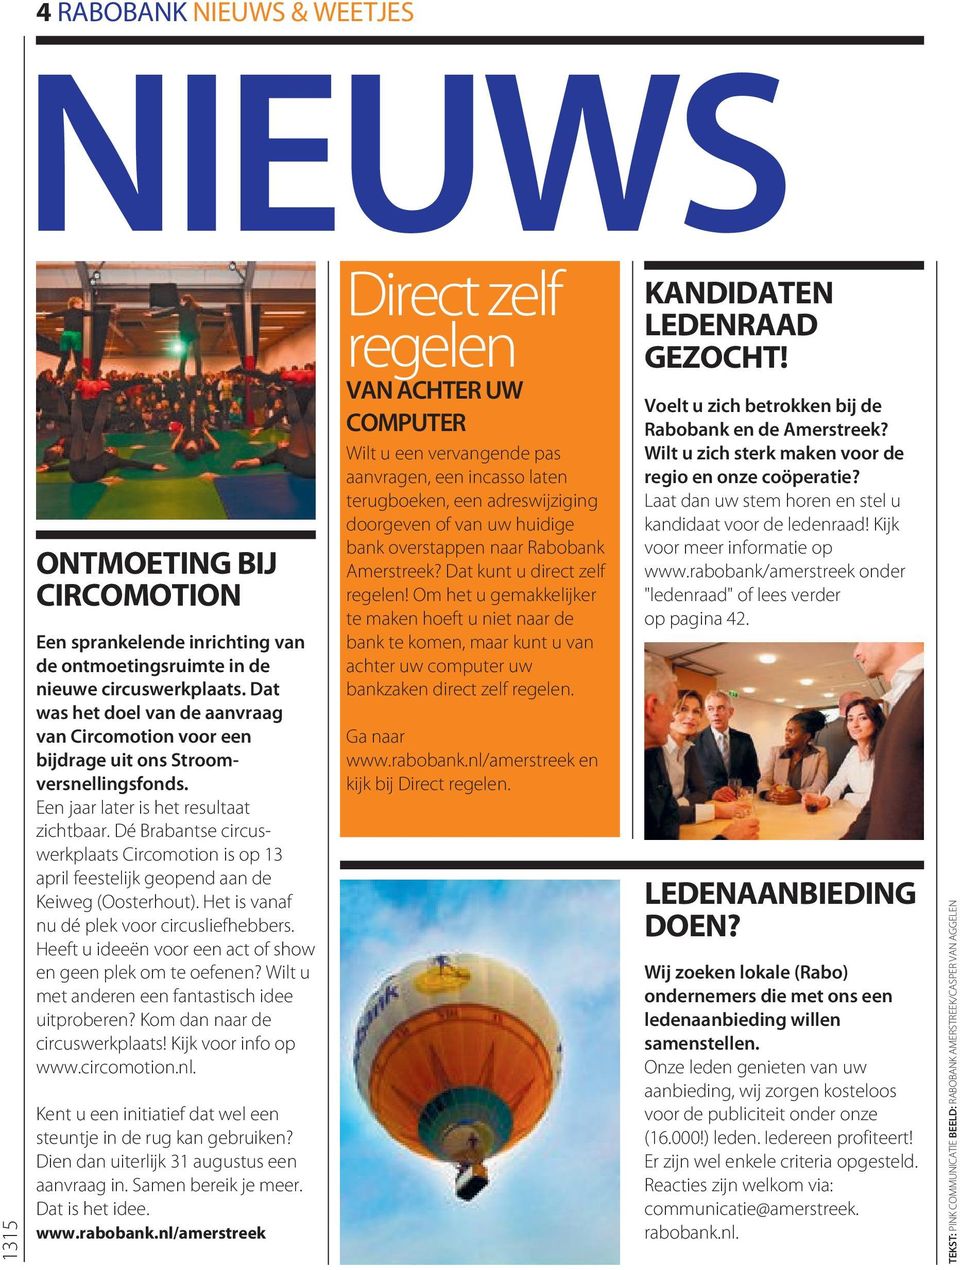 Dé Brabantse circuswerkplaats Circomotion is op 13 april feestelijk geopend aan de Keiweg (Oosterhout). Het is vanaf nu dé plek voor circusliefhebbers.